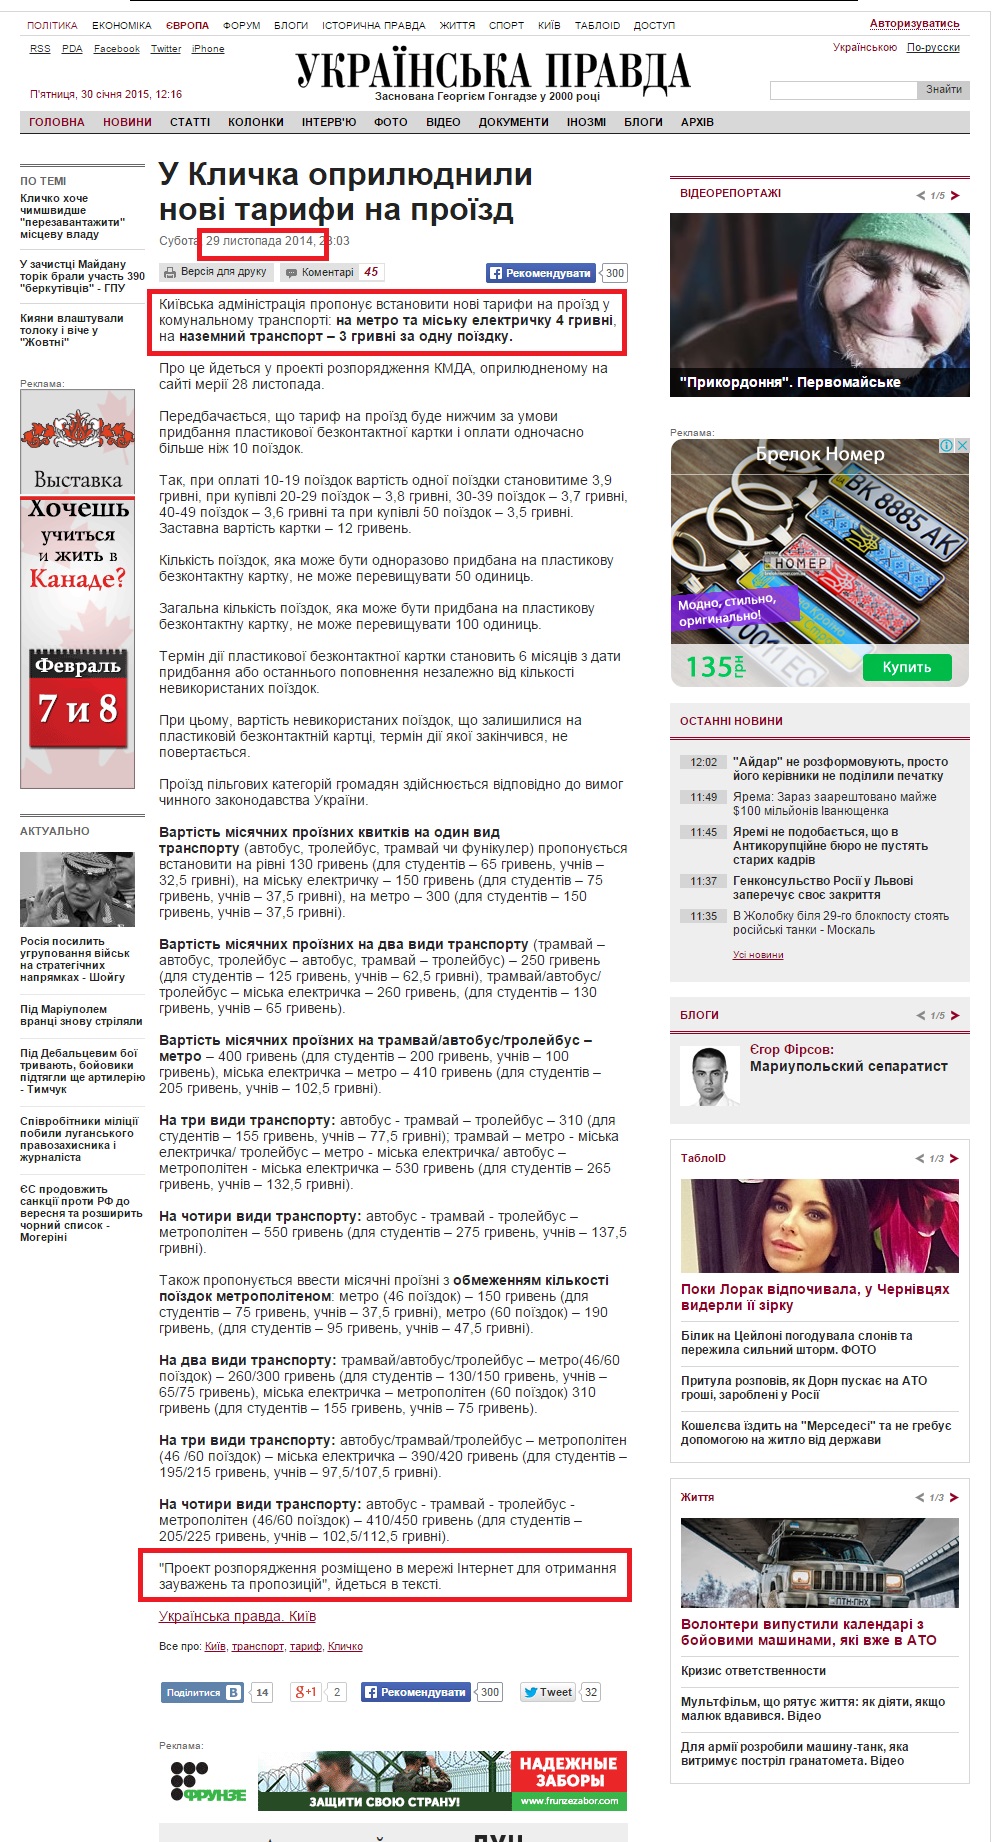 http://www.pravda.com.ua/news/2014/11/29/7045883/